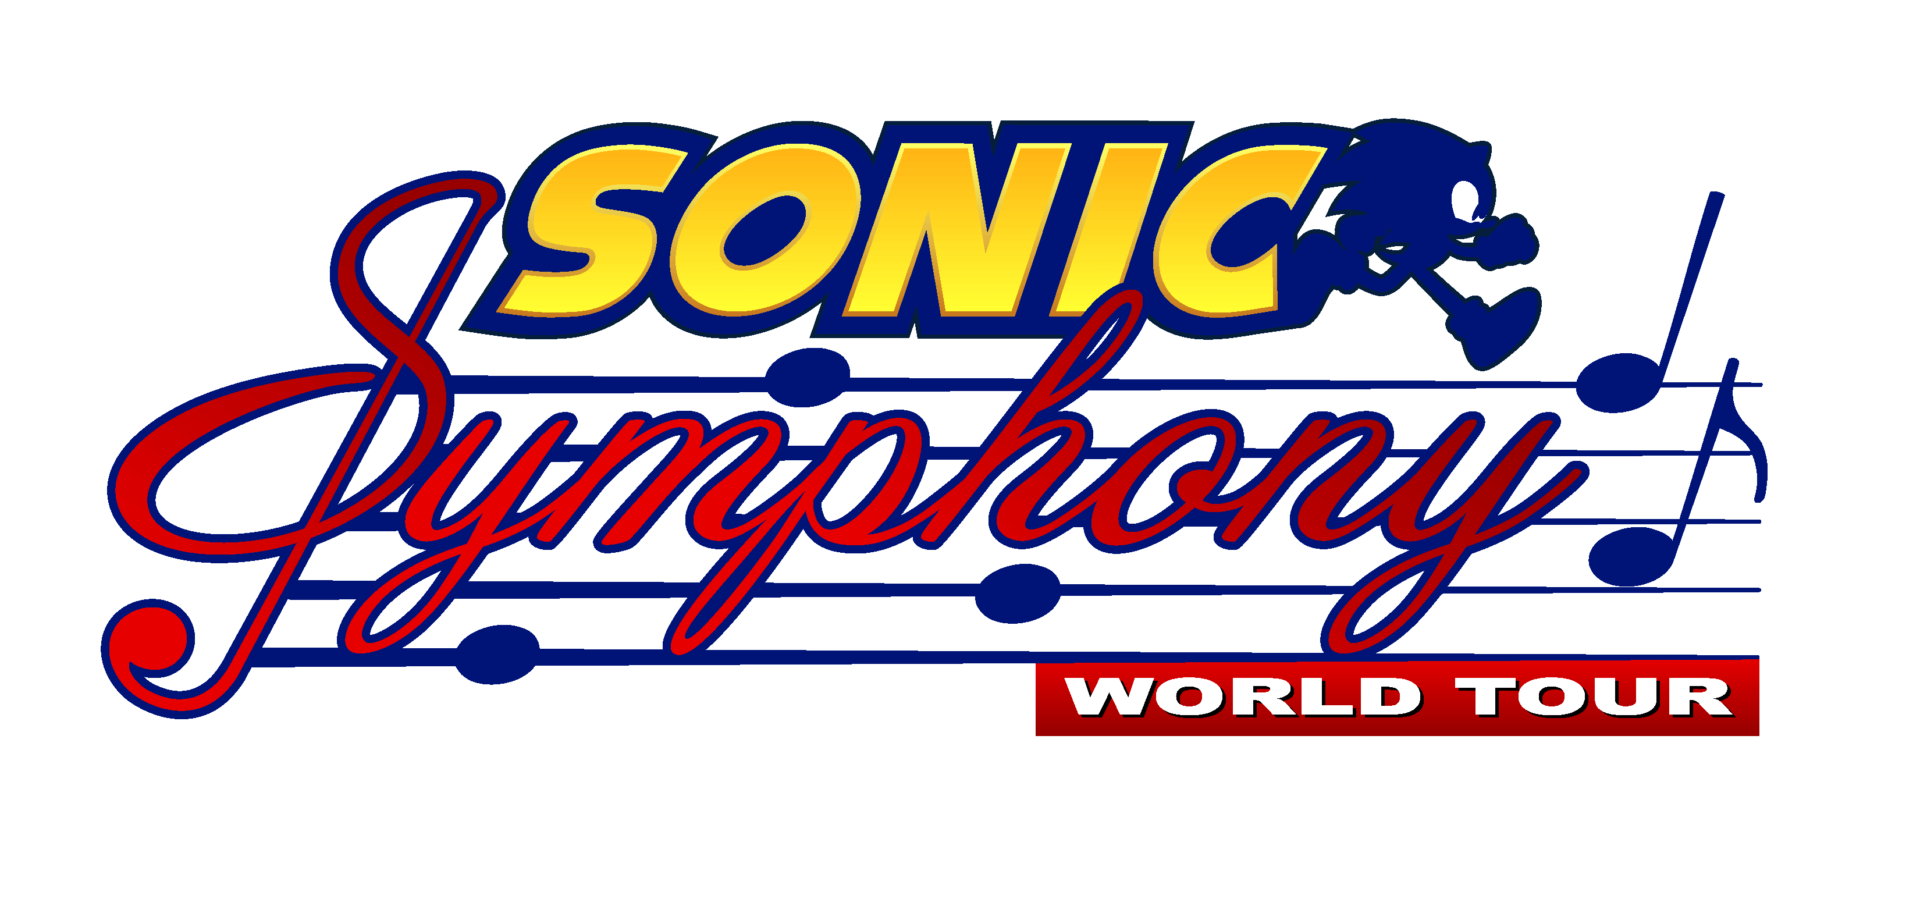 SEGA divulga as últimas notícias de Sonic the Hedgehog no terceiro evento  anual Sonic Central - Drops de Jogos